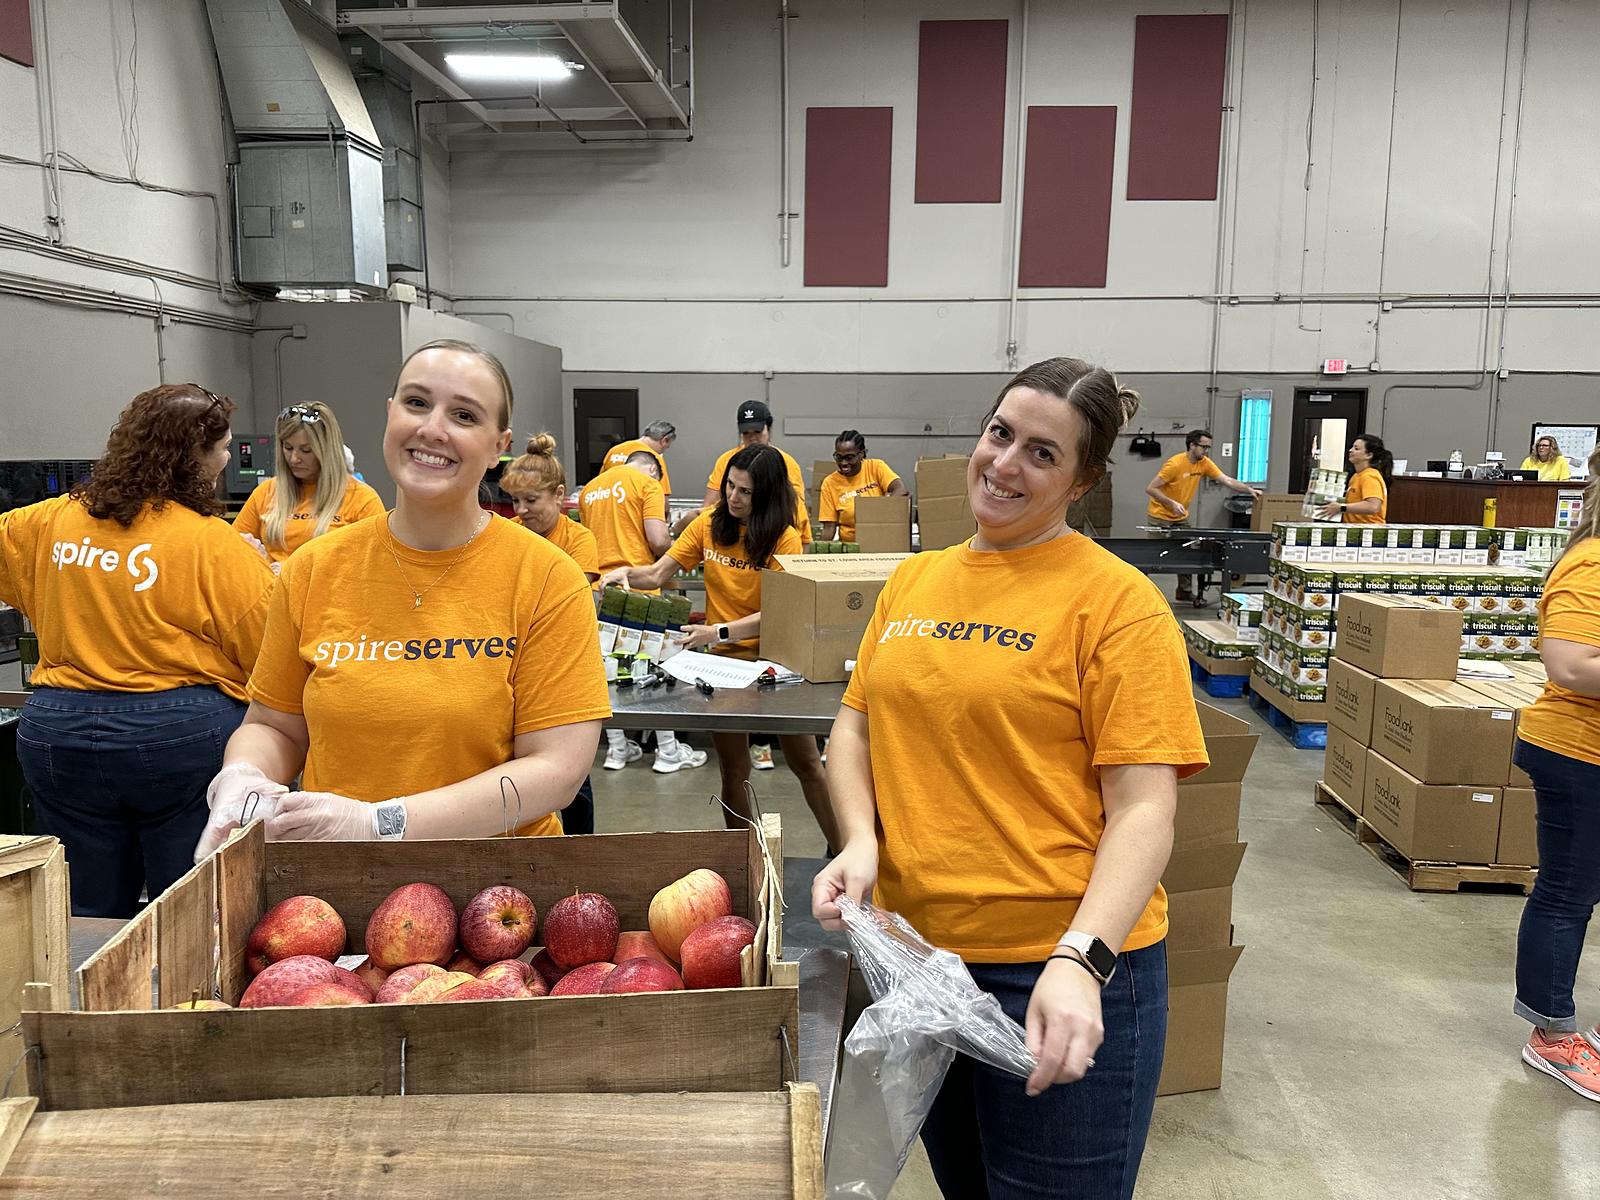 spire volunteers smiling while packaging food